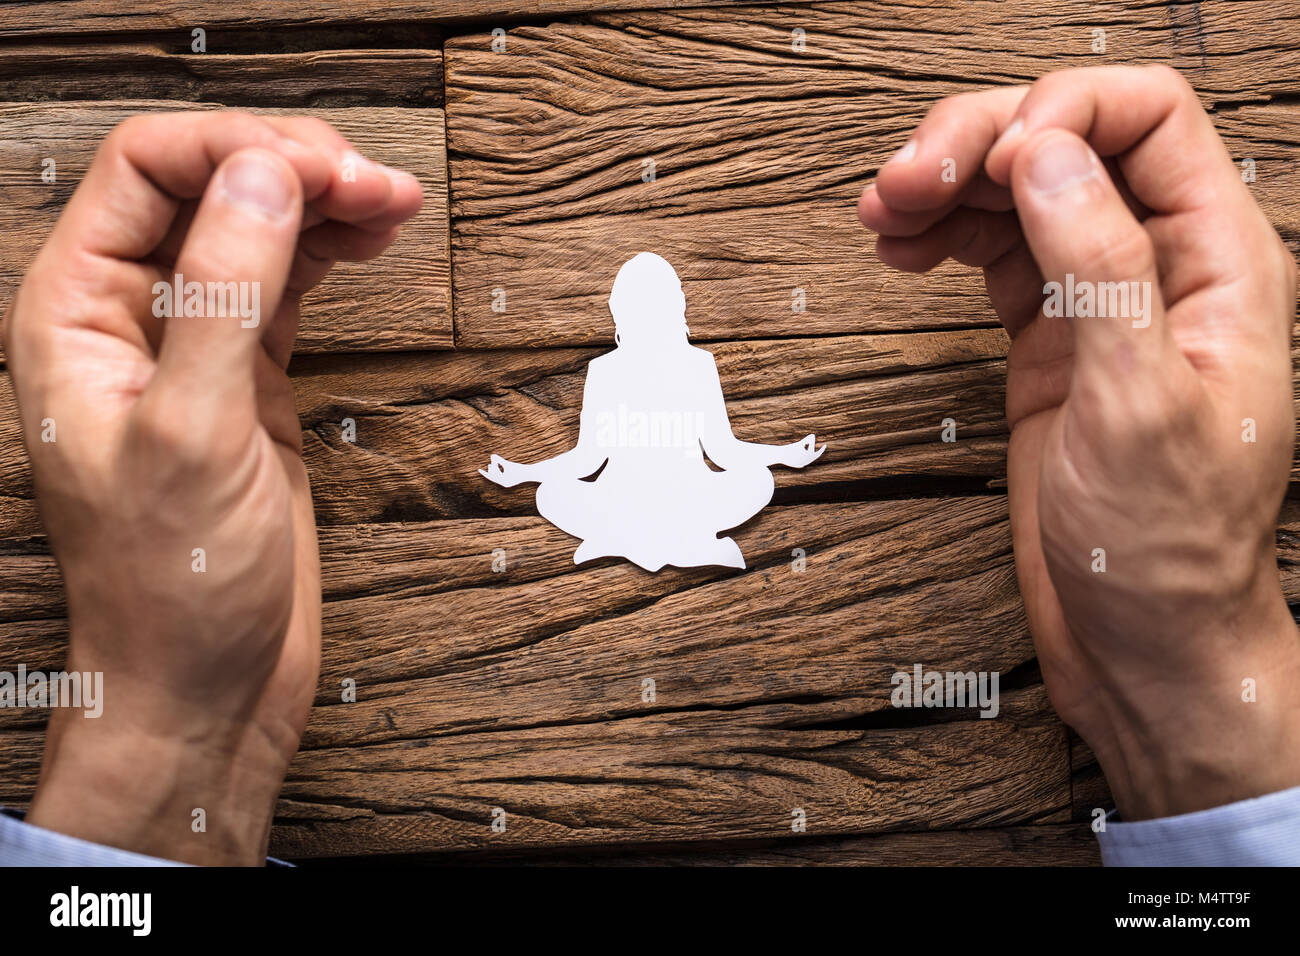 Les doigts de l'homme dans Mudra geste avec Lotus Poser composé de White Paper Cut-out Banque D'Images